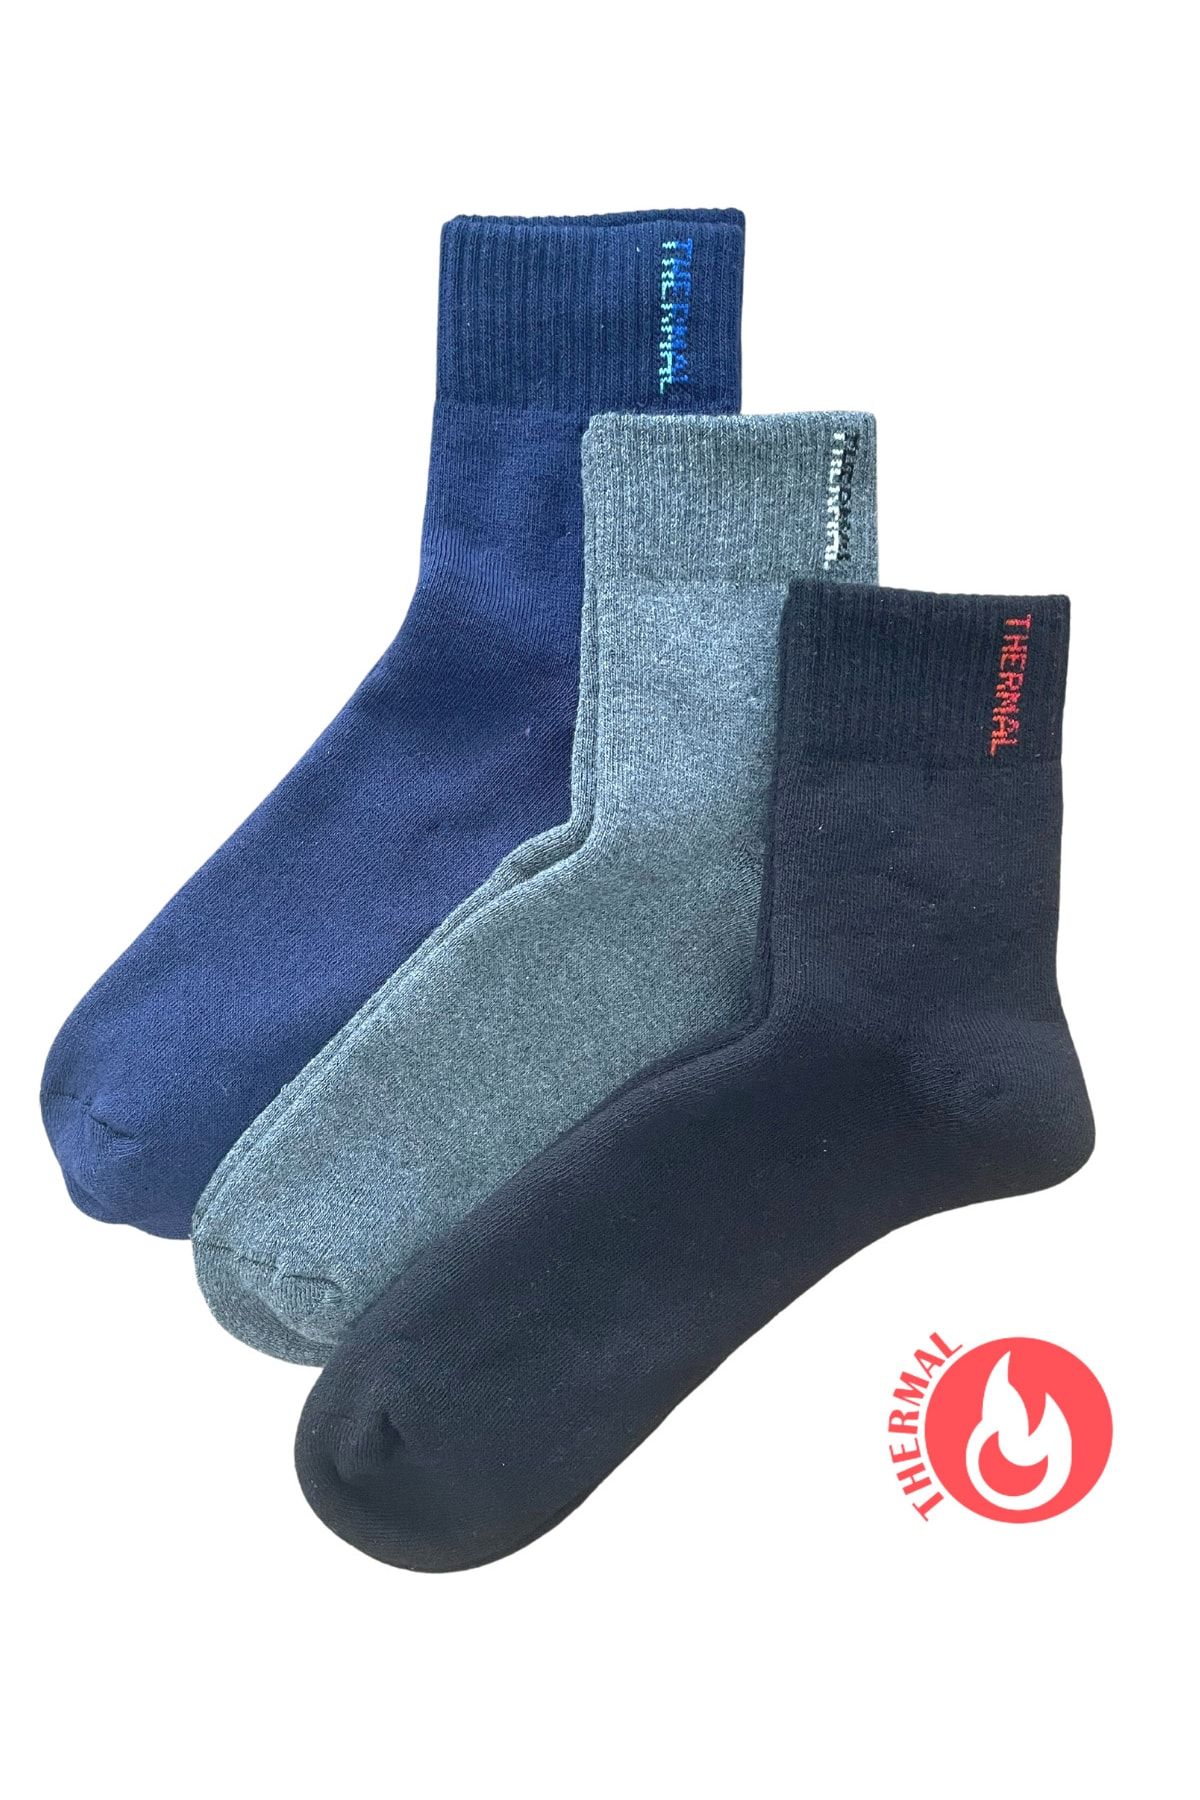 socksbox Termal Dikişsiz Kışlık Orta Konç Çorap/3 Çift/siyah-lacivert-füme